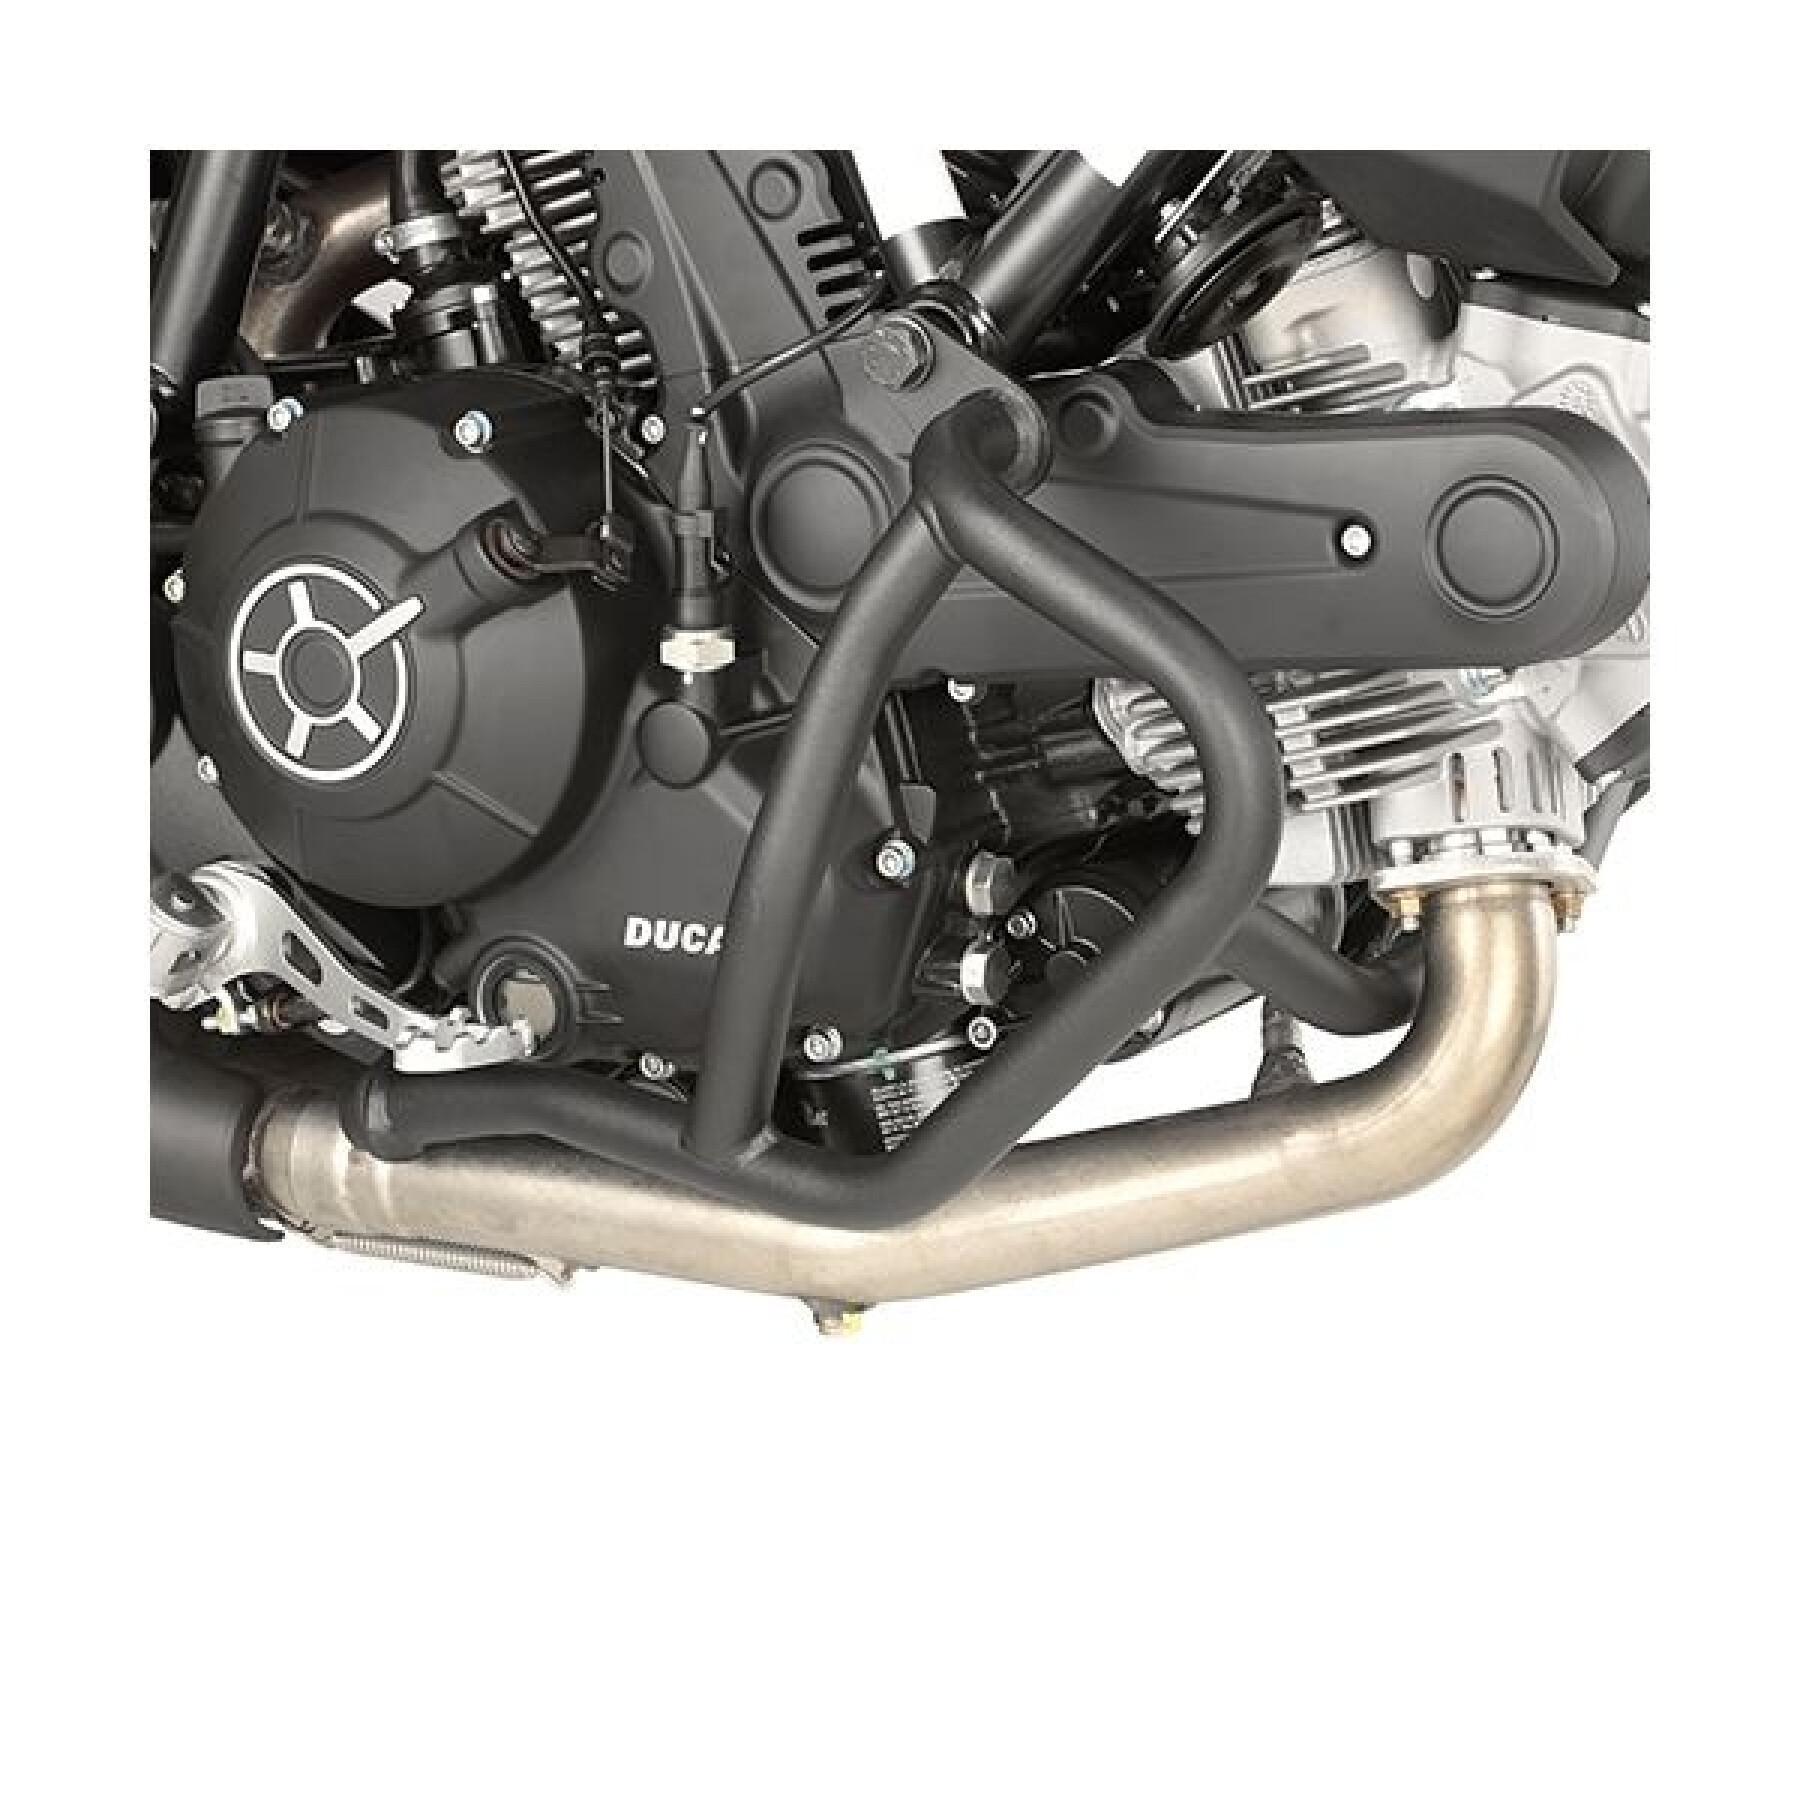 Protezioni per moto Givi Ducati Scrambler 800 (15 à 18)